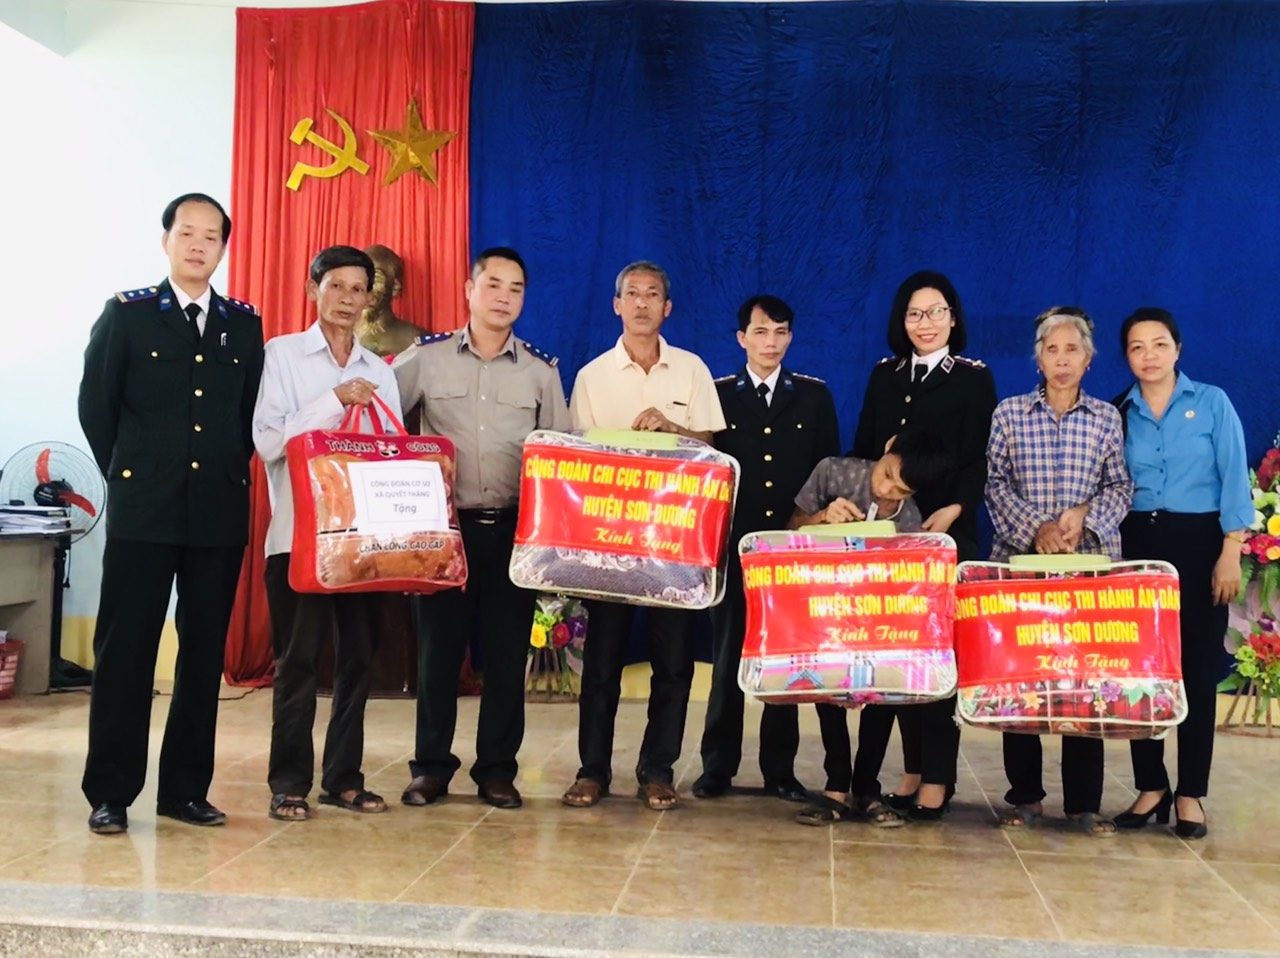 Chi cục thi hành án dân sự huyện Sơn Dương tổ chức gặp mặt nhân kỷ niệm 73 năm ngày truyền thống THADS (19/07/1946 – 19/07/2019).